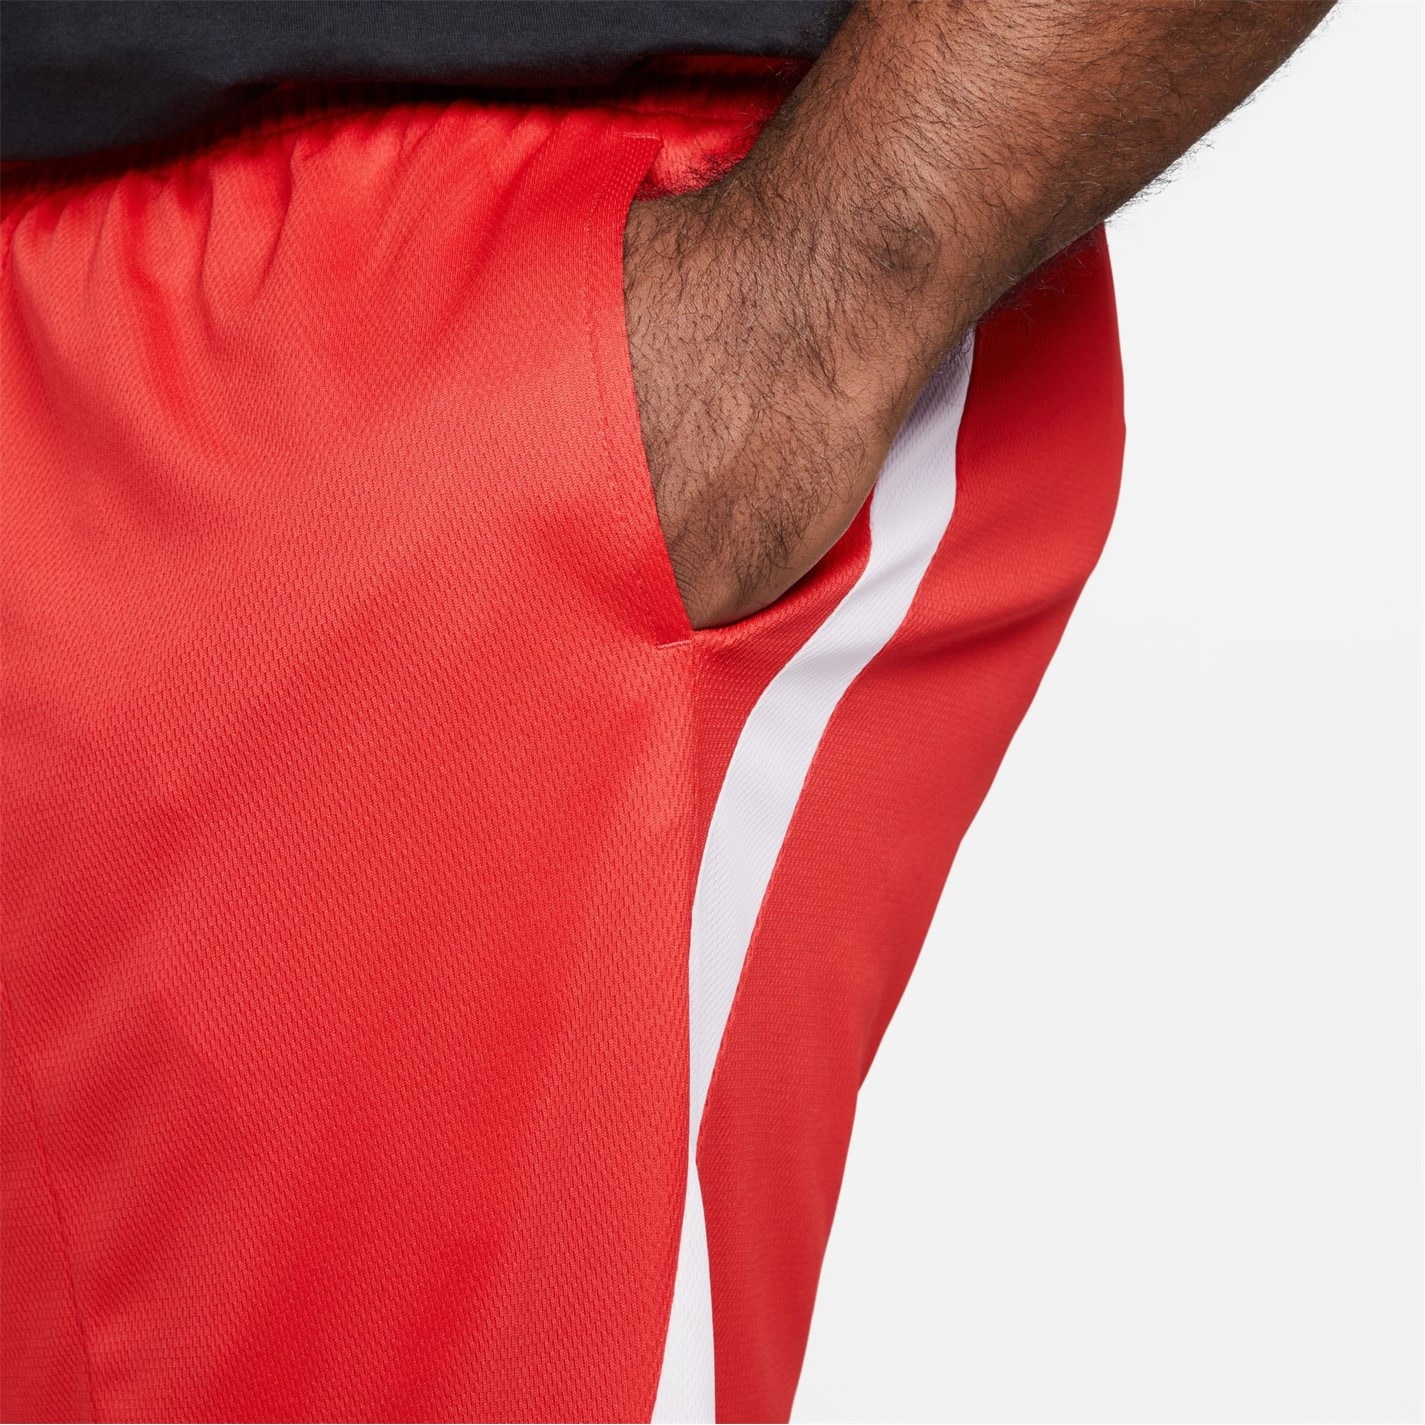 Pantaloni scurti Nike Dri-FIT baschet pentru Barbati rosu negru